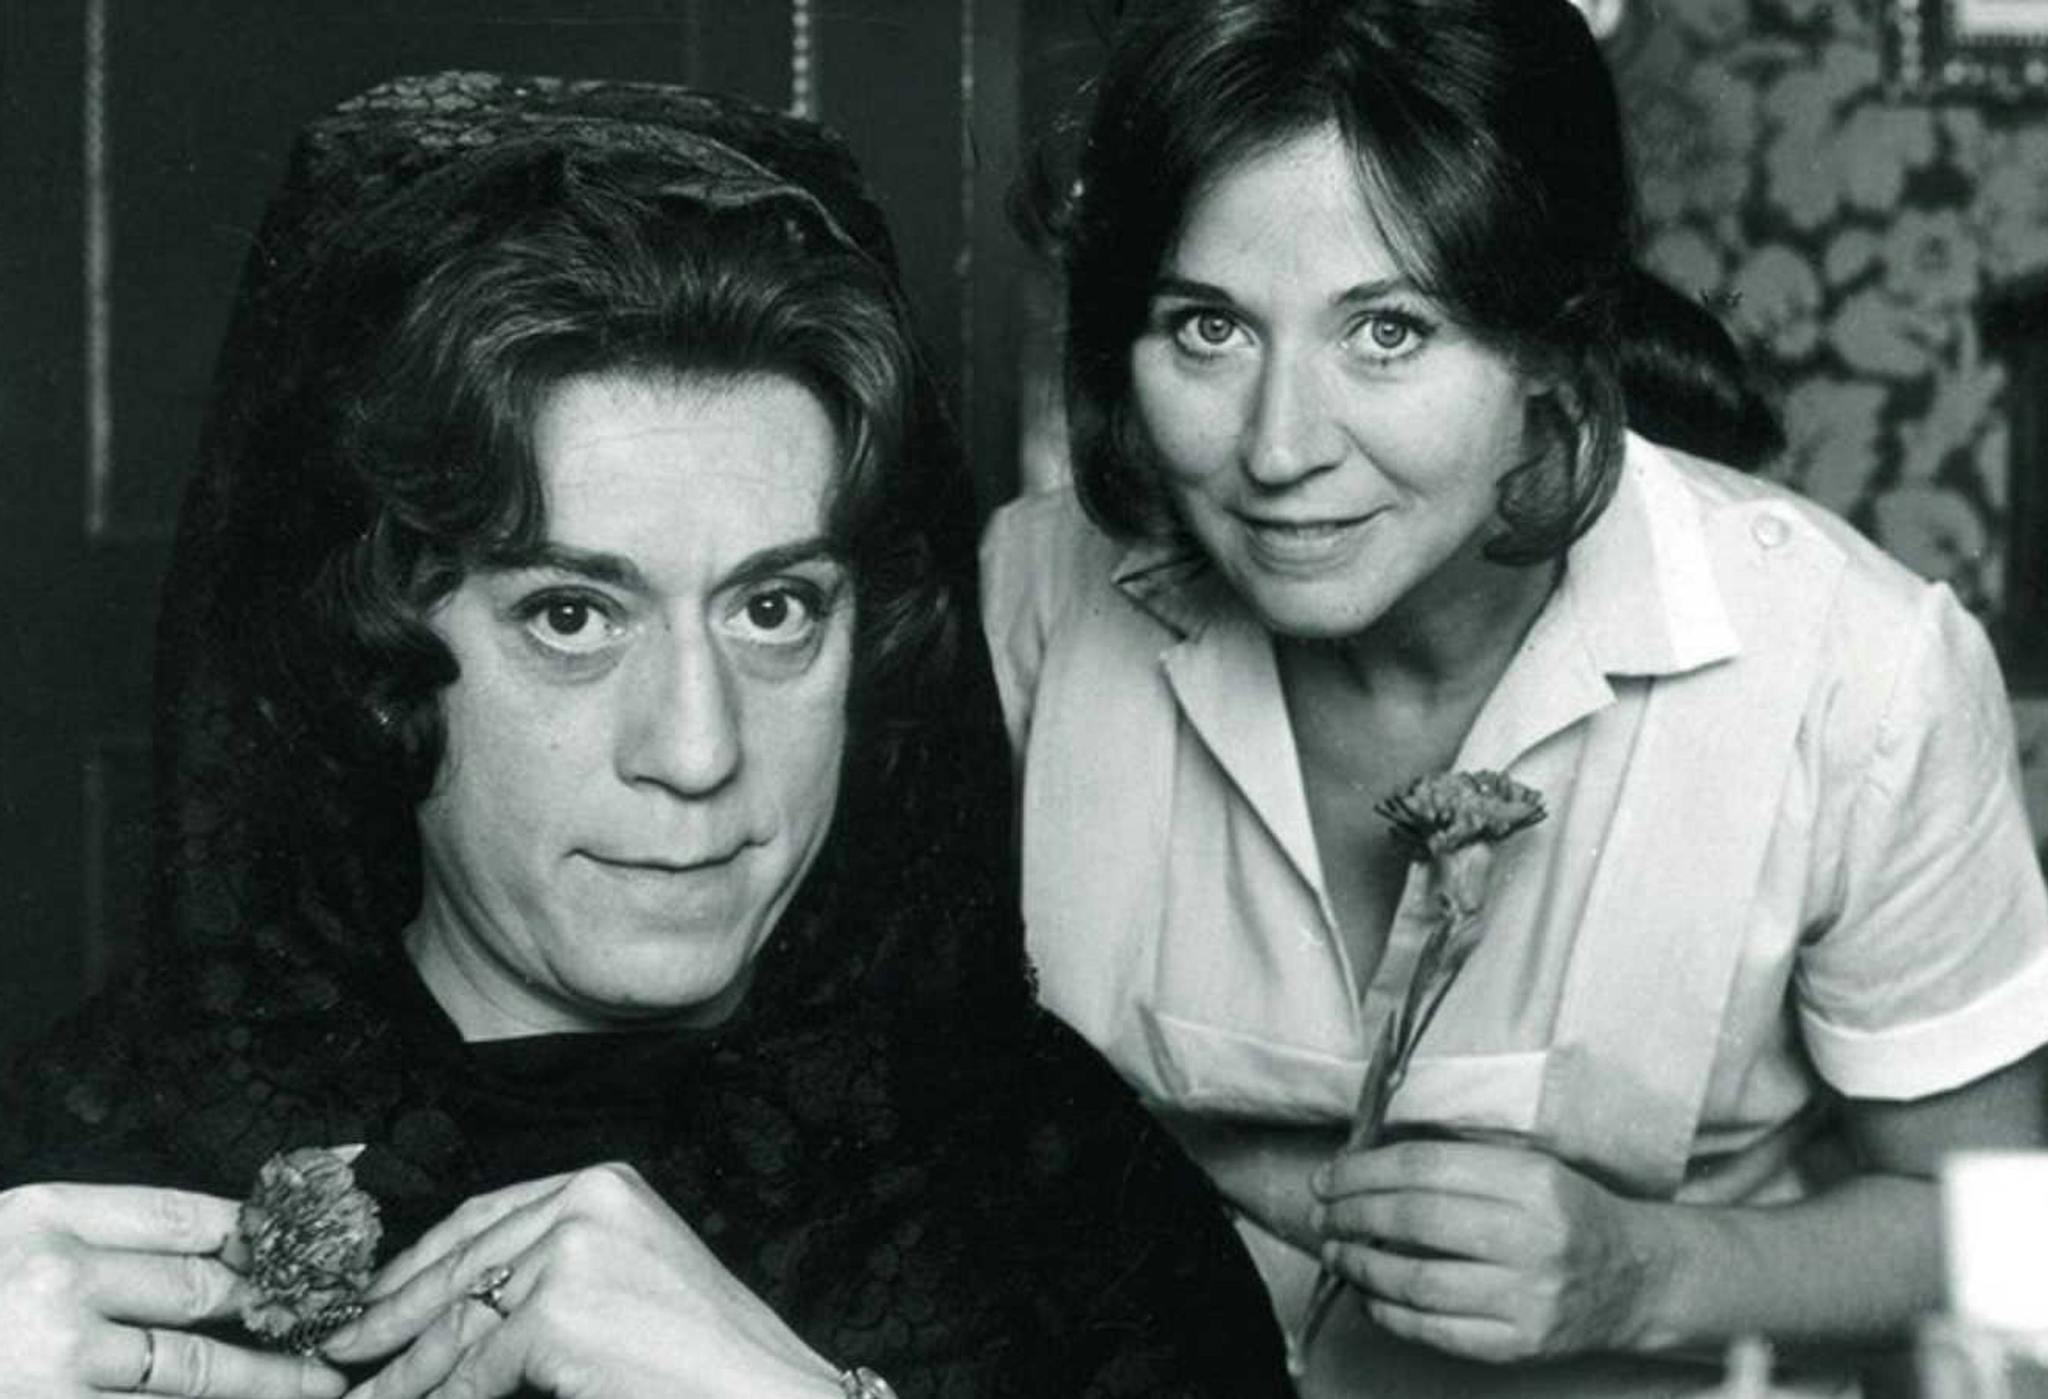 José Luis López Vázquez y Julieta Serrano en un fotograma de 'Mi querida señorita', de Jaime de Armiñán